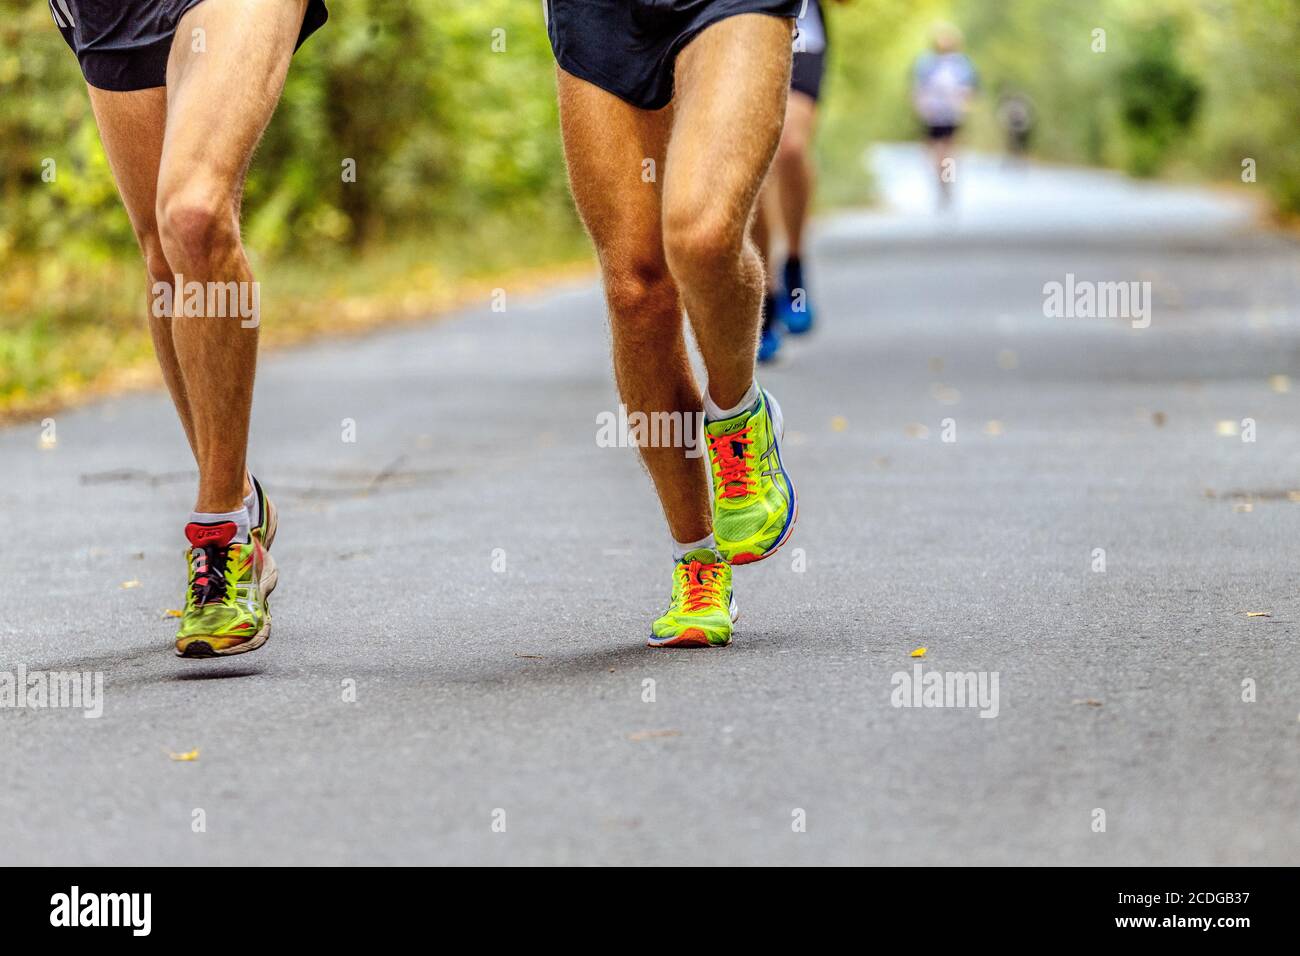 Tscheljabinsk, Russland - 11. September 2016: Beine zwei männliche Läufer in Laufschuhen Asics in City Marathon Stockfoto